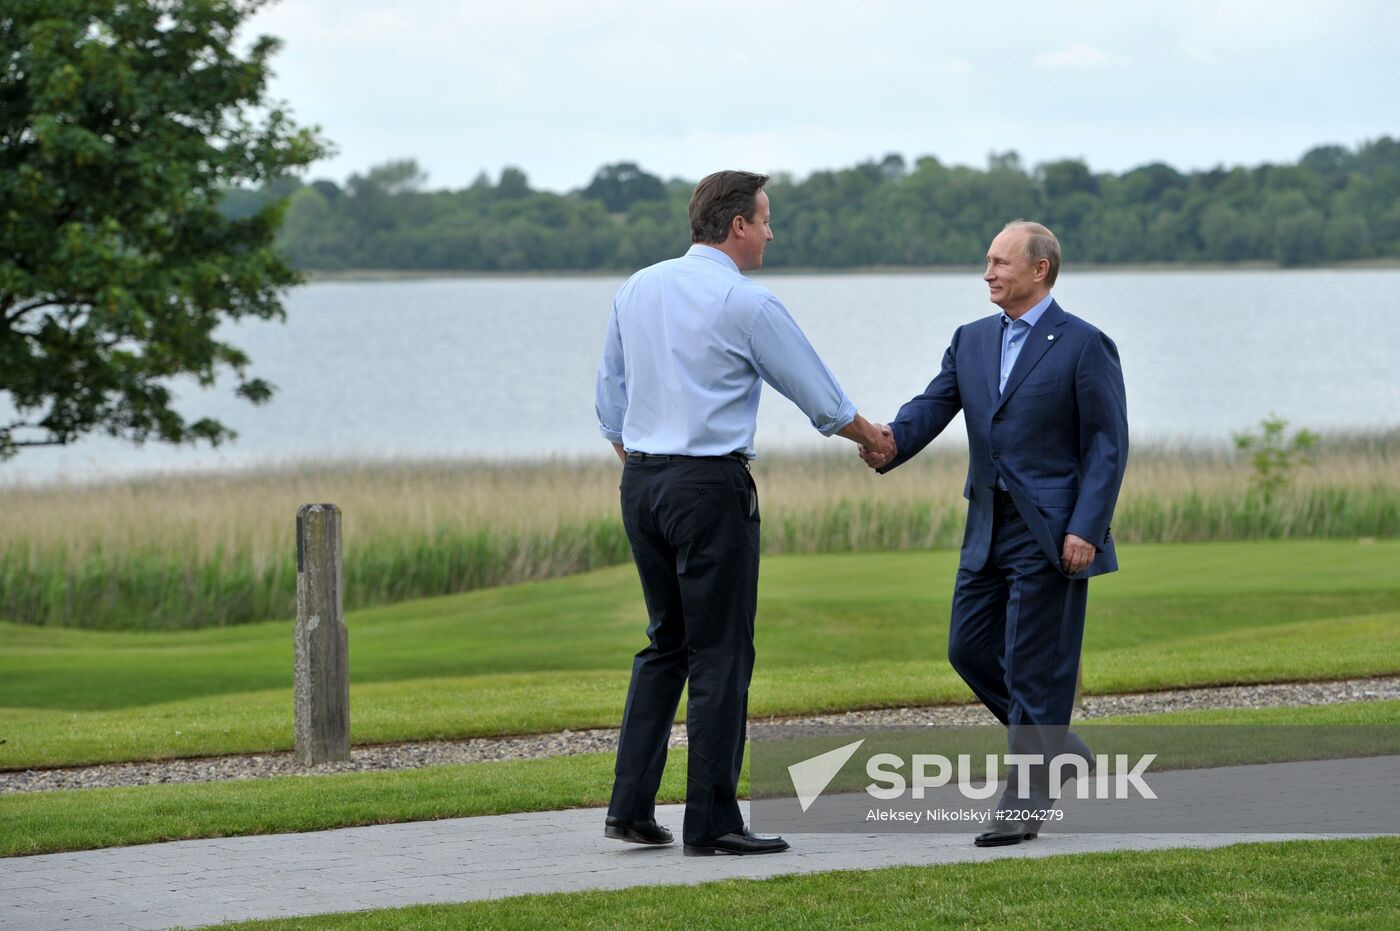 G8 summit opens in Northern Ireland